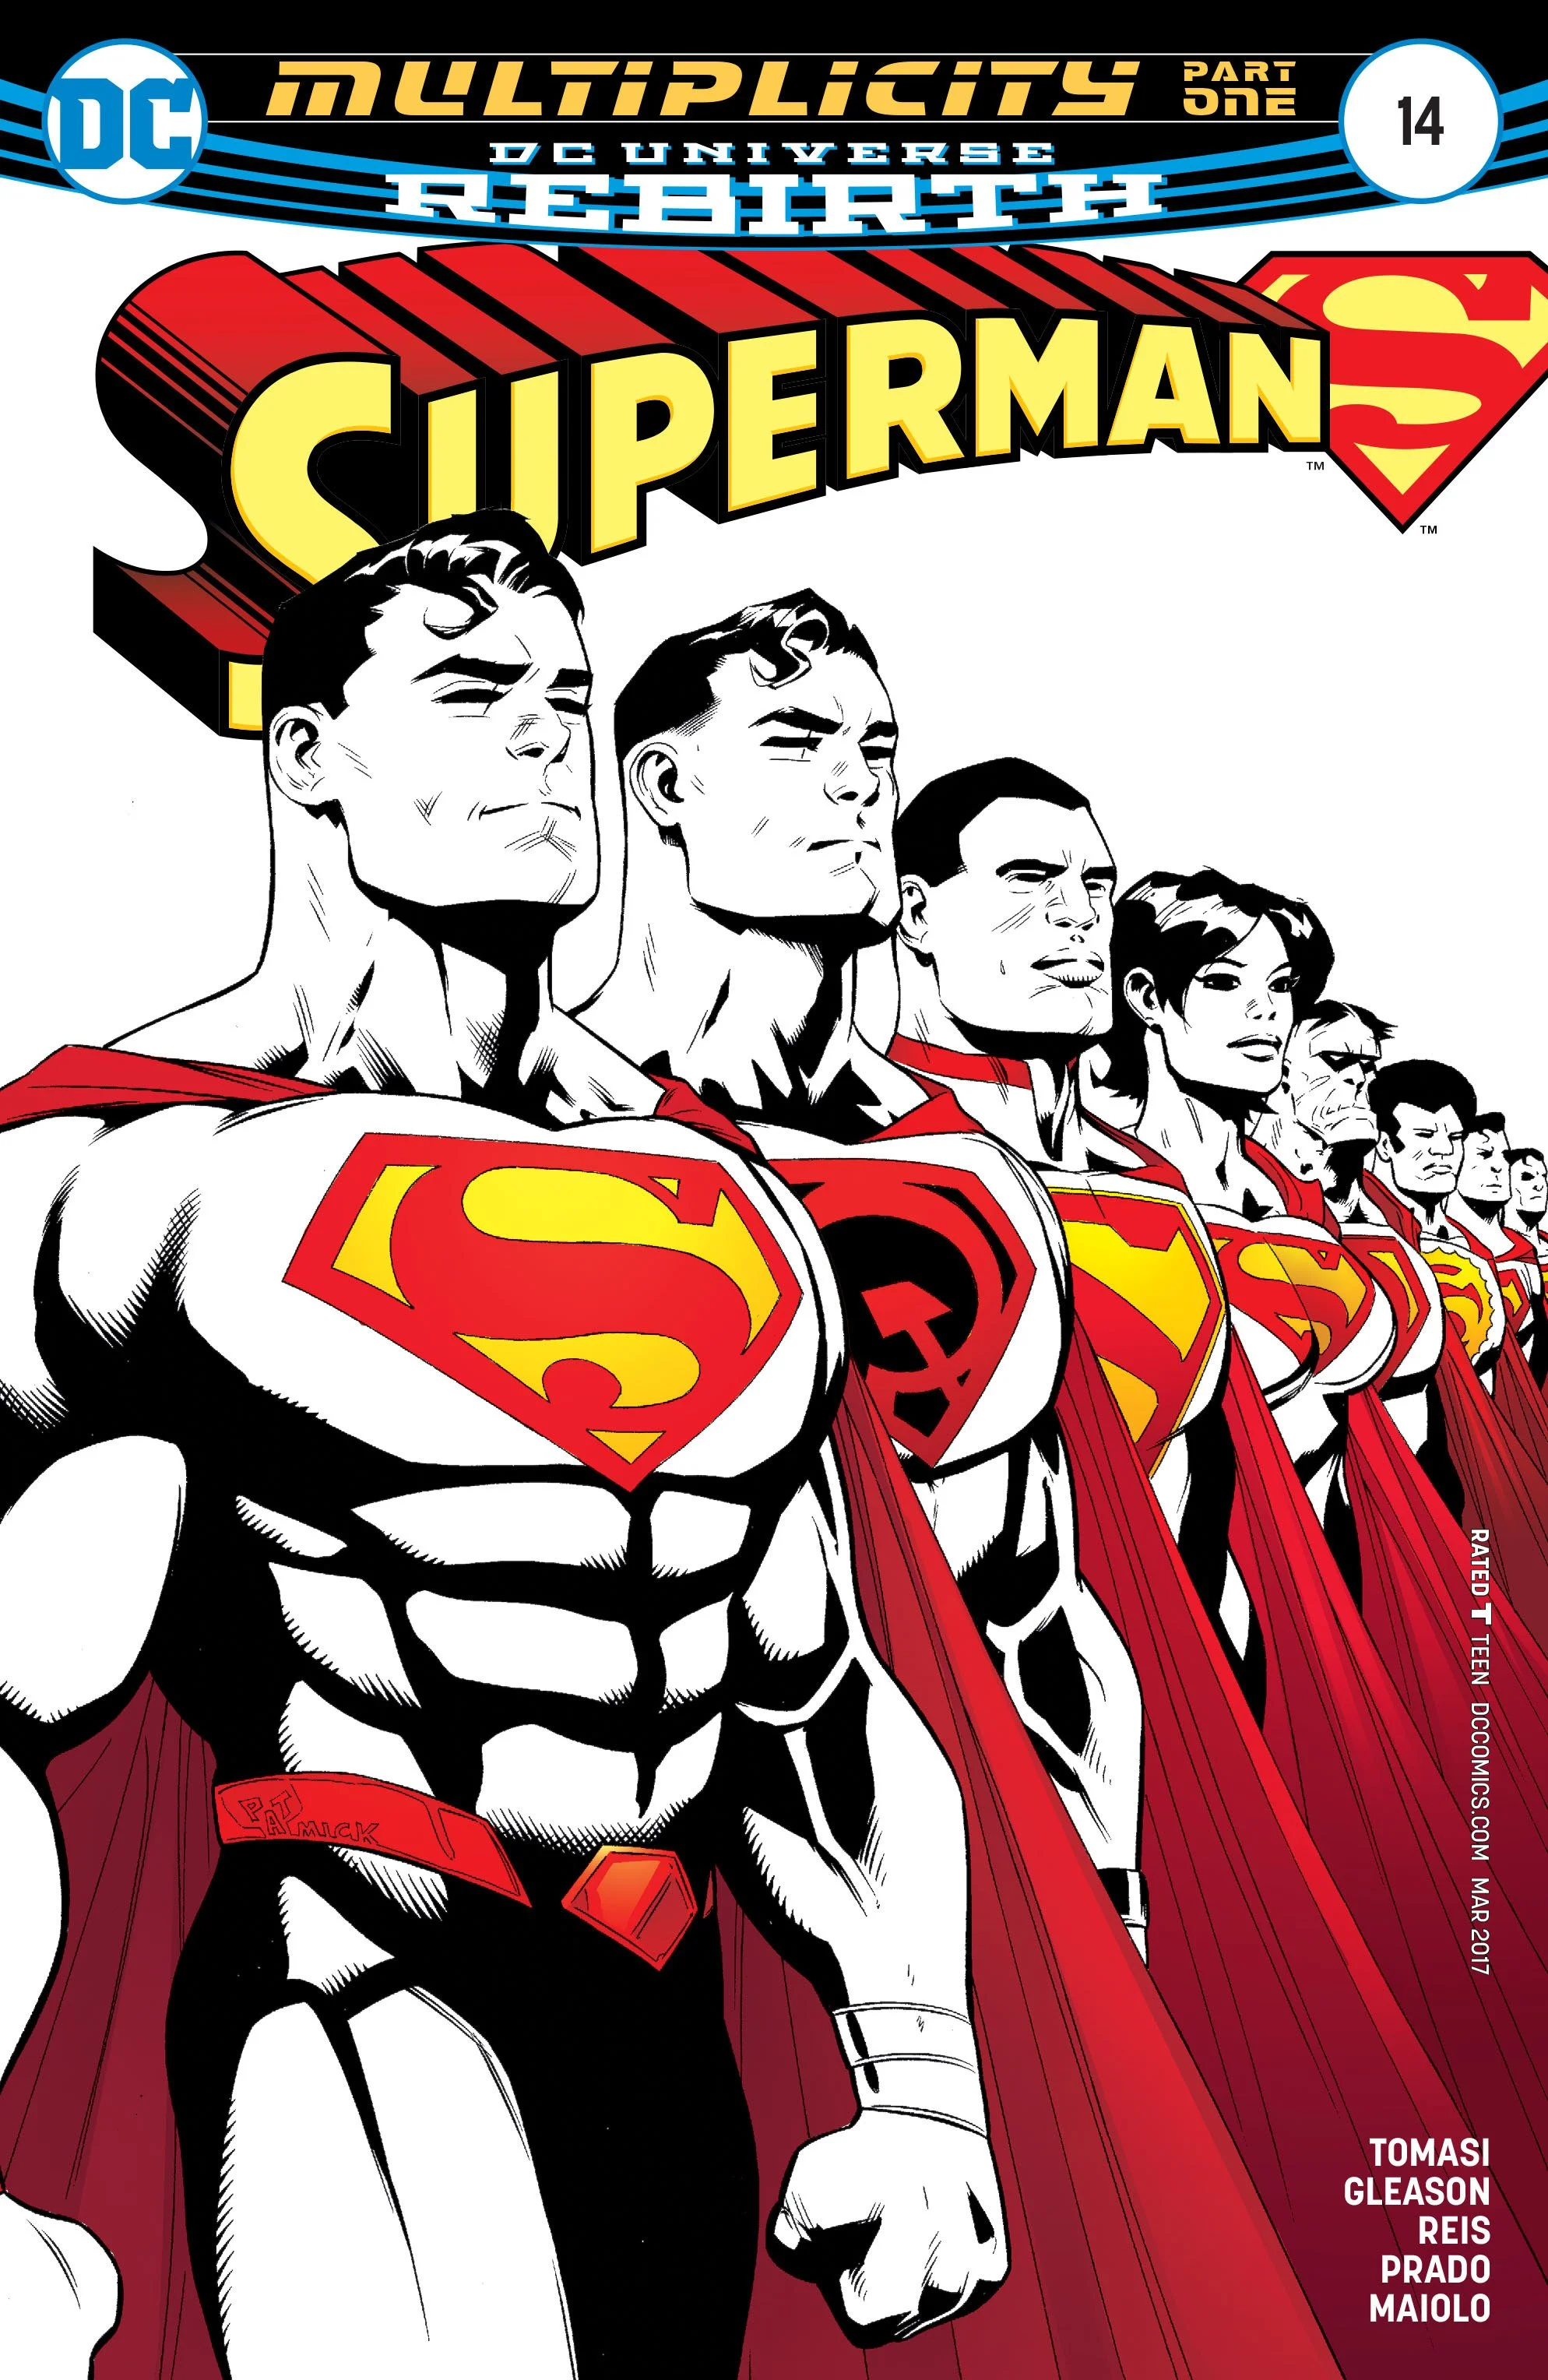 Советский, чернокожий, китайский и другие Супермены в новом комиксе DC - фото 1